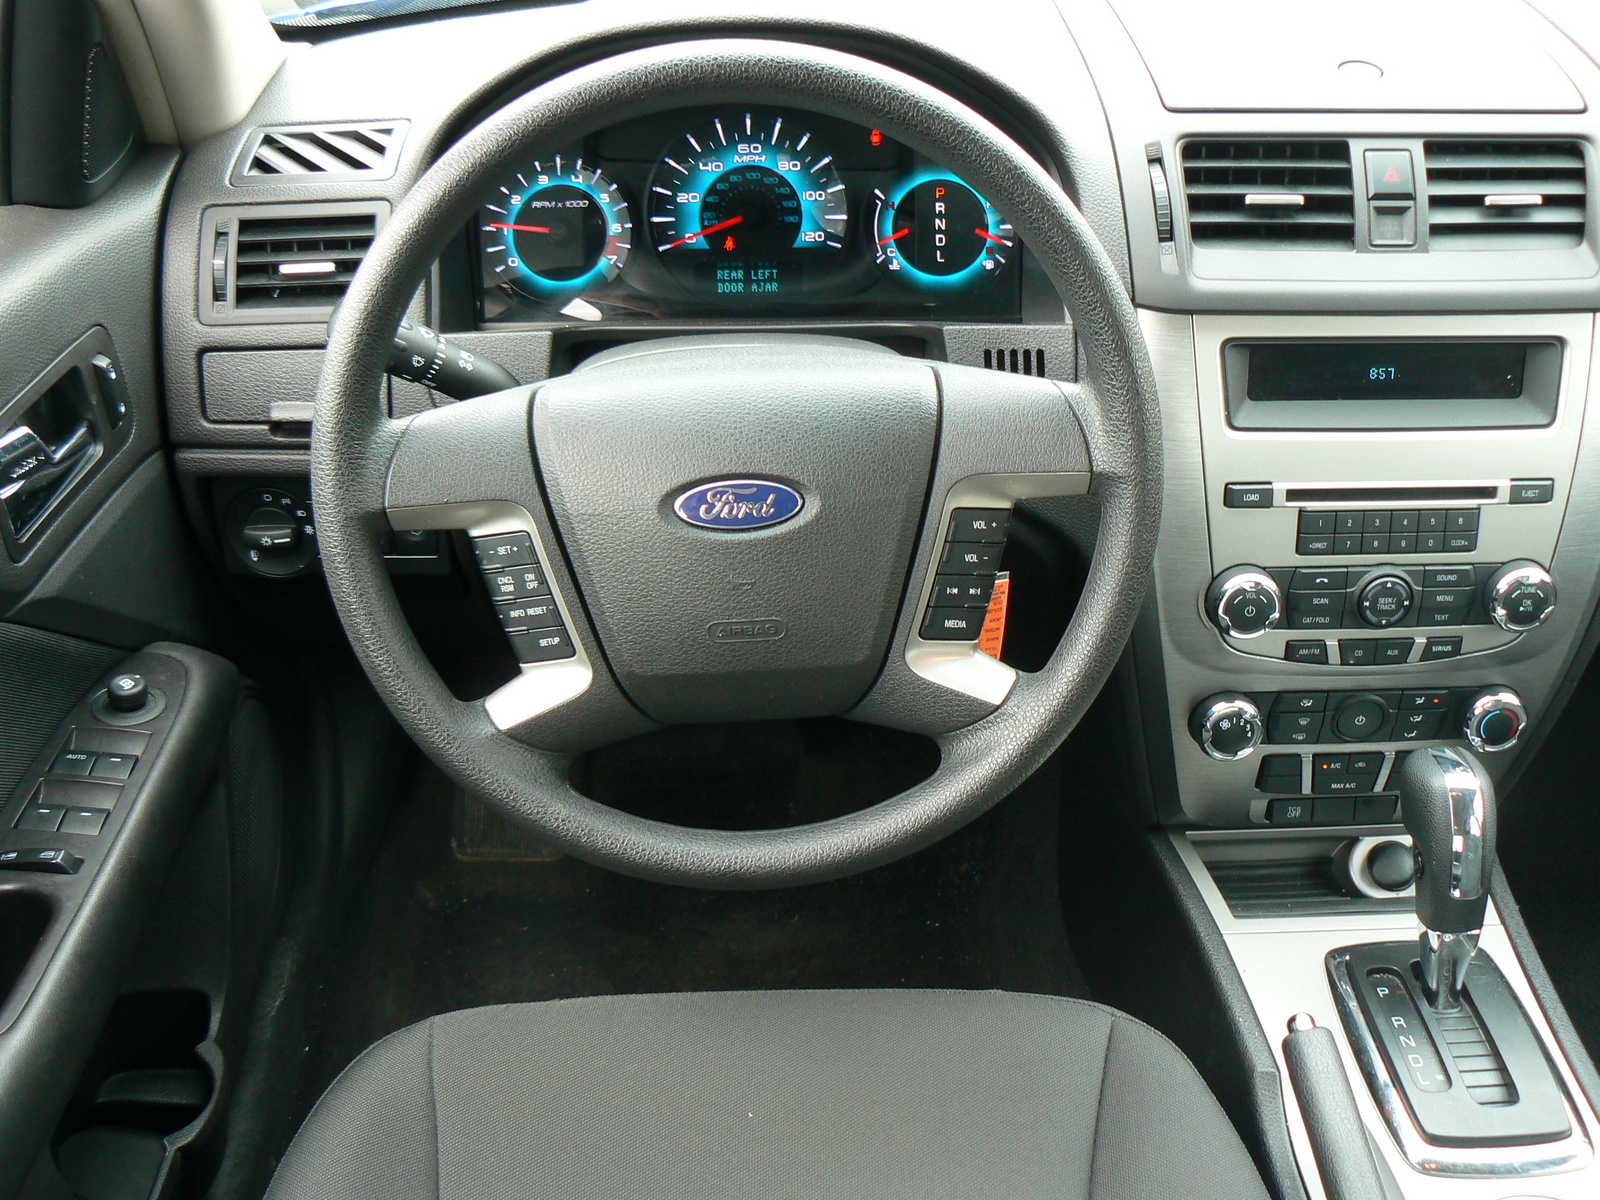 2011 Ford fusion interior dimensions #9